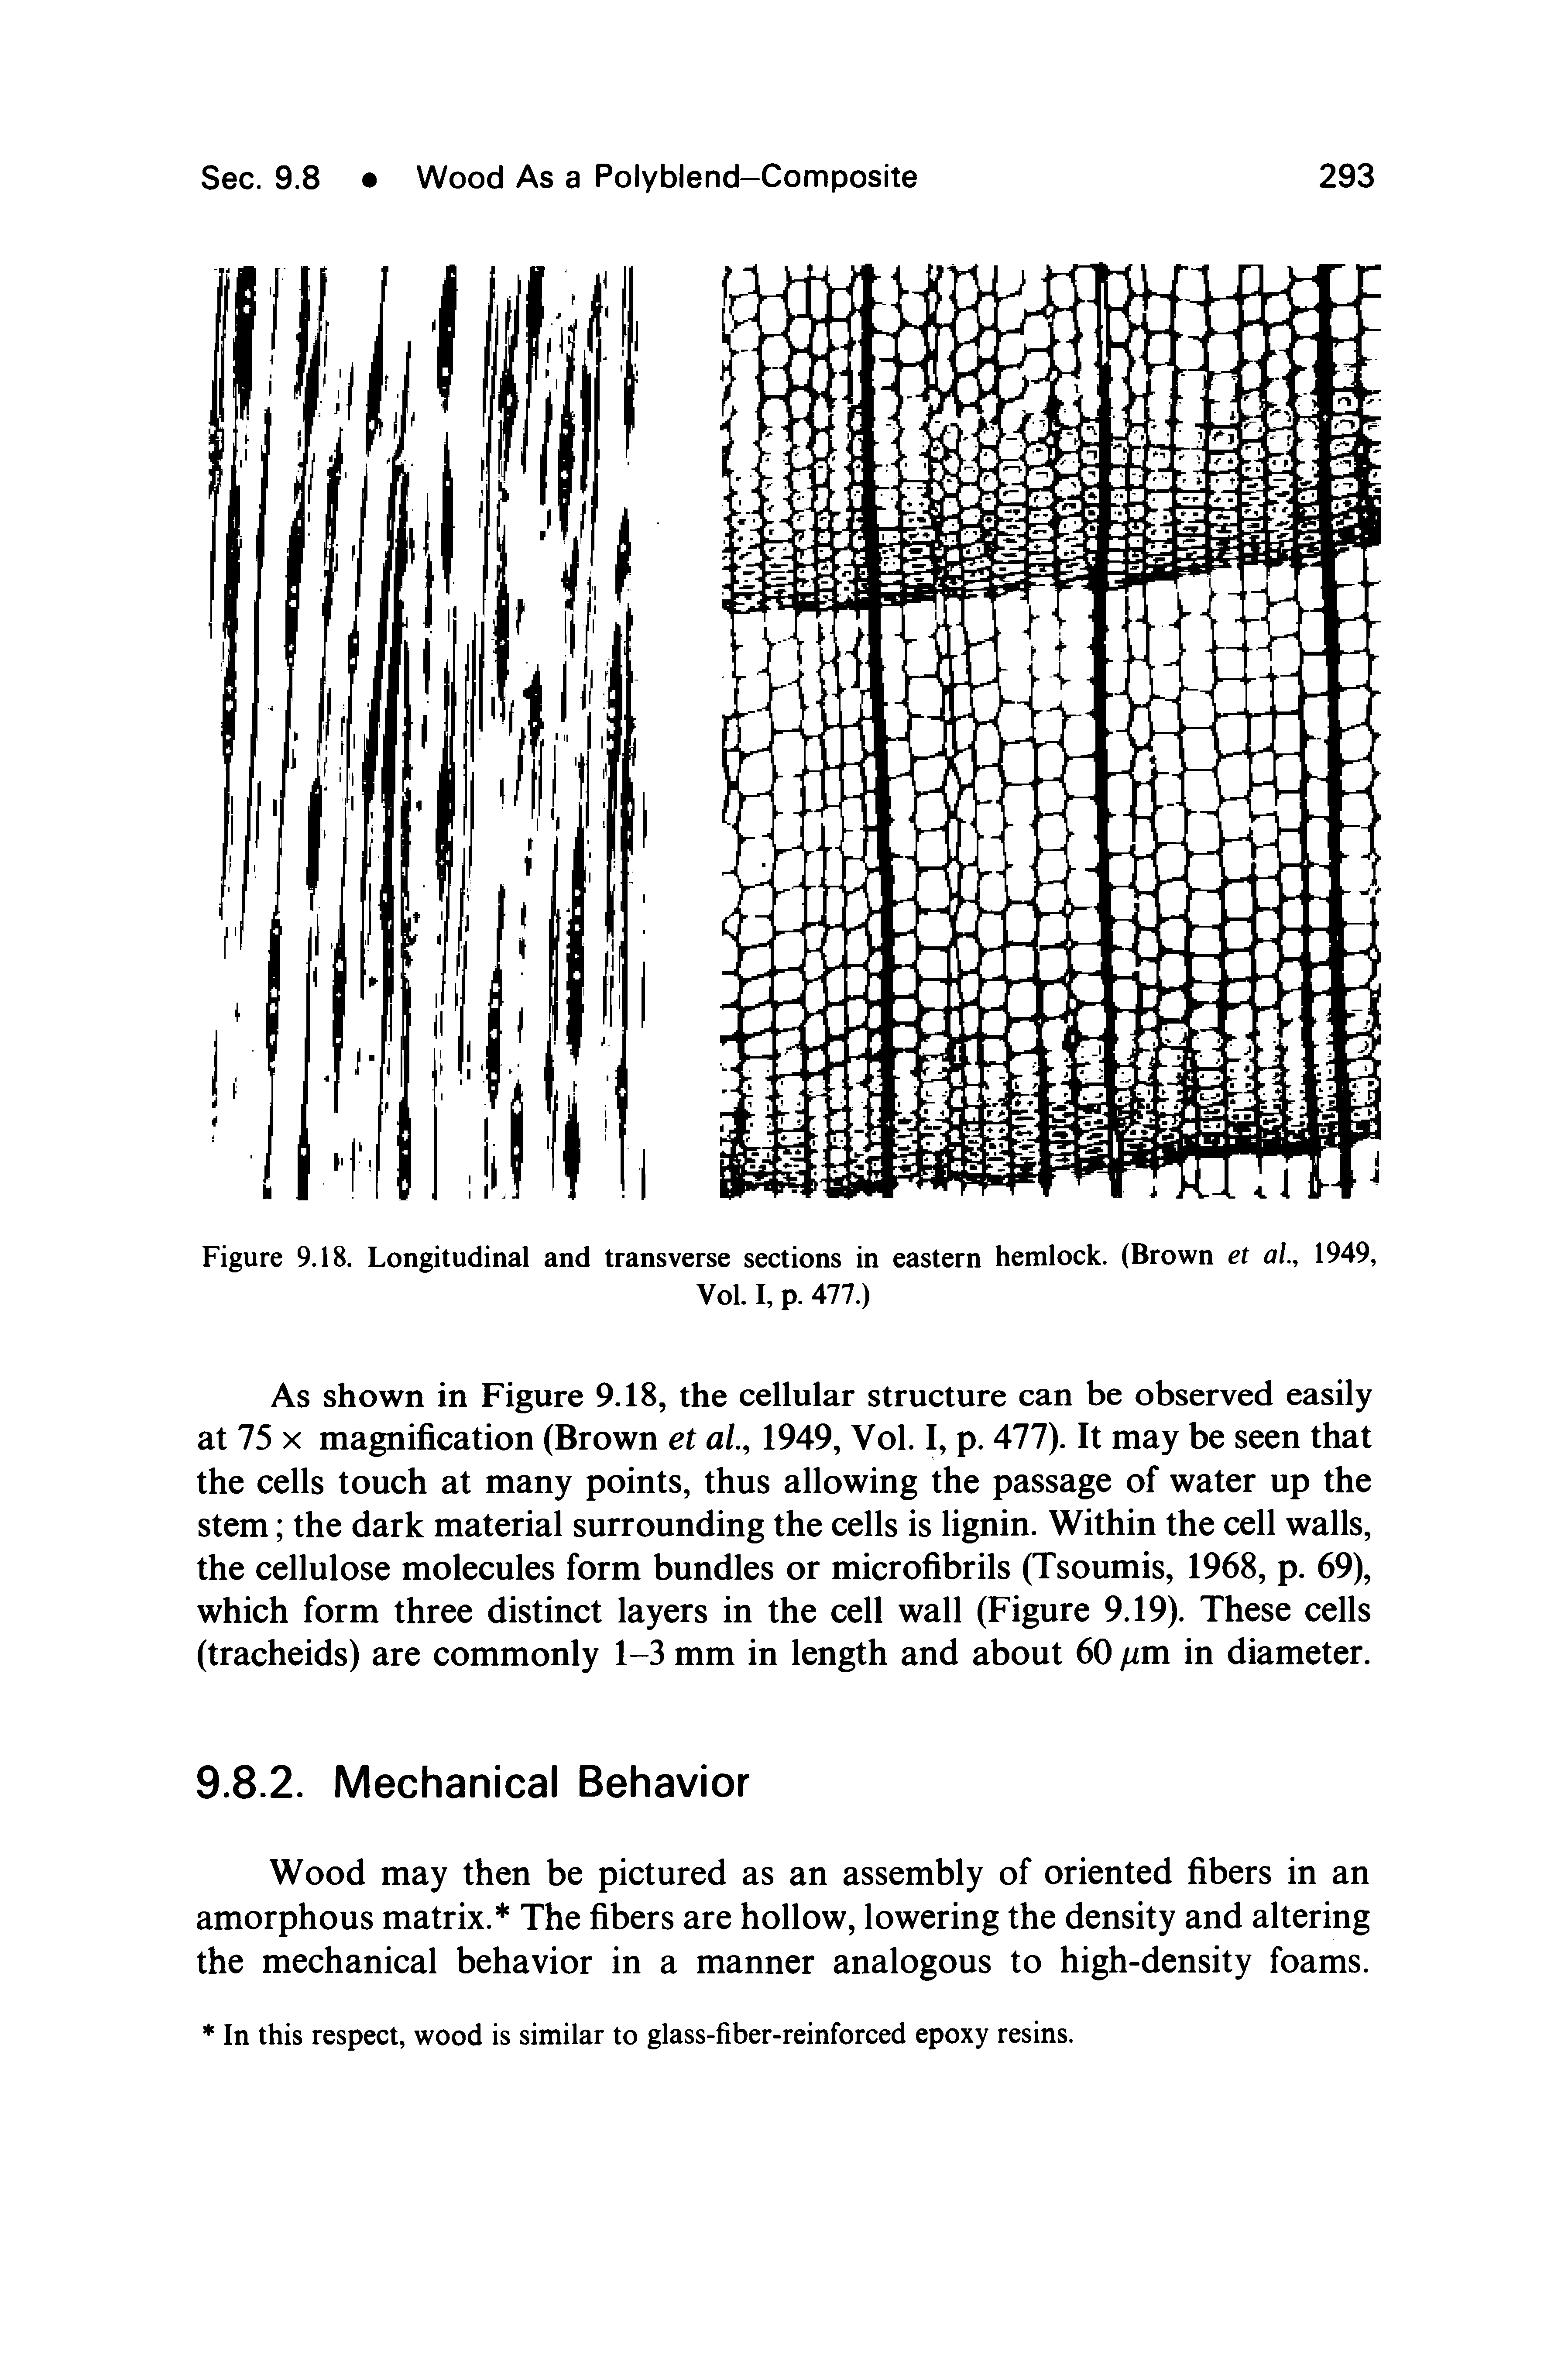 Figure 9.18. Longitudinal and transverse sections in eastern hemlock. (Brown et al, 1949,...